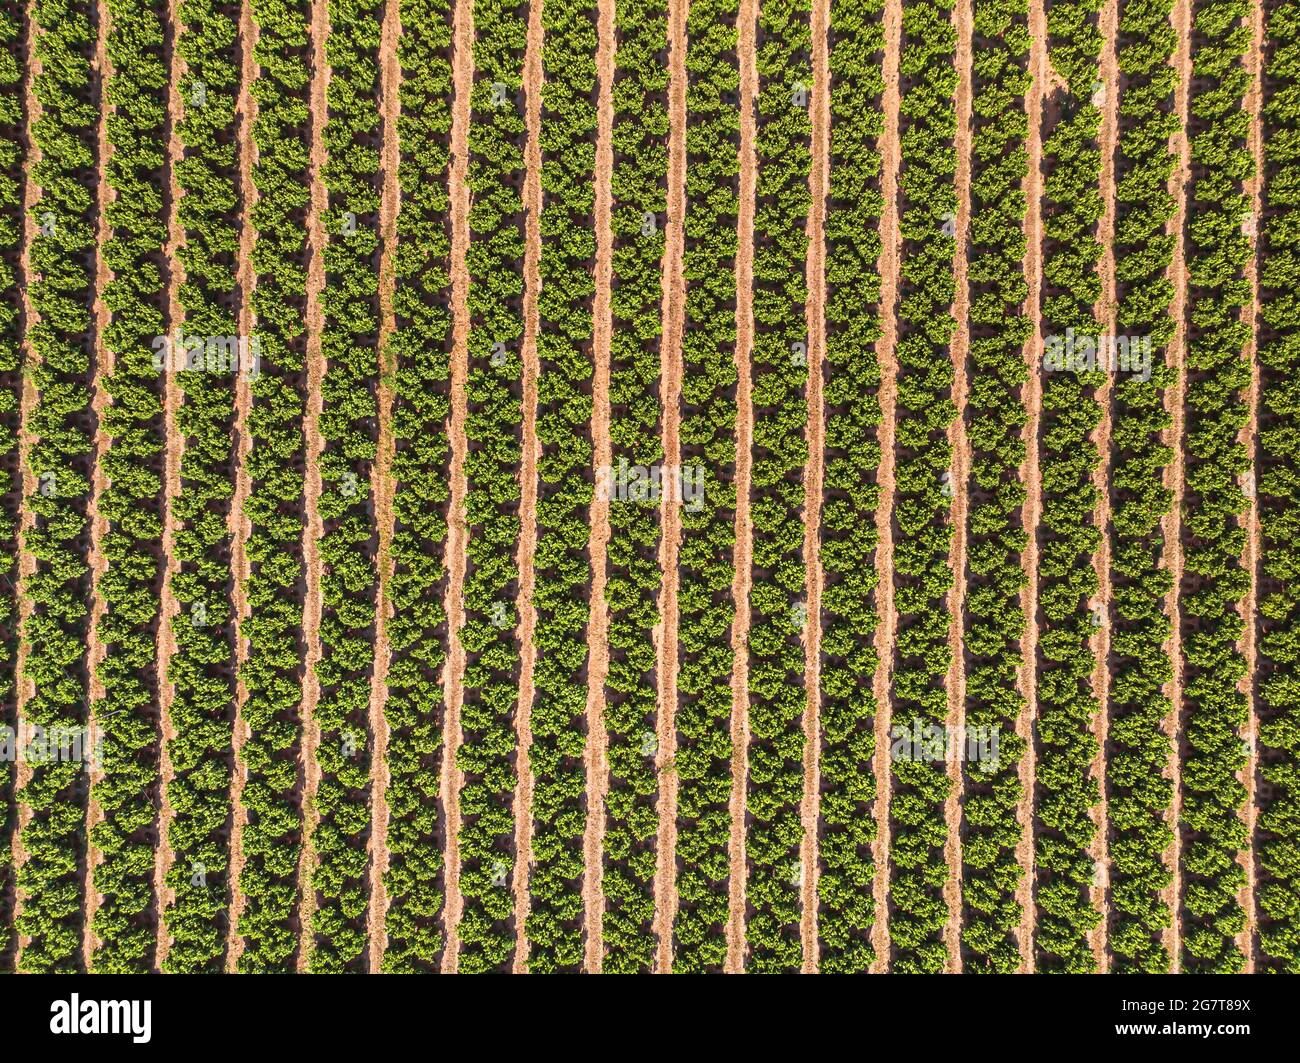 Paesaggio agricolo. Campo coltivato con alberi da frutto in file Foto Stock